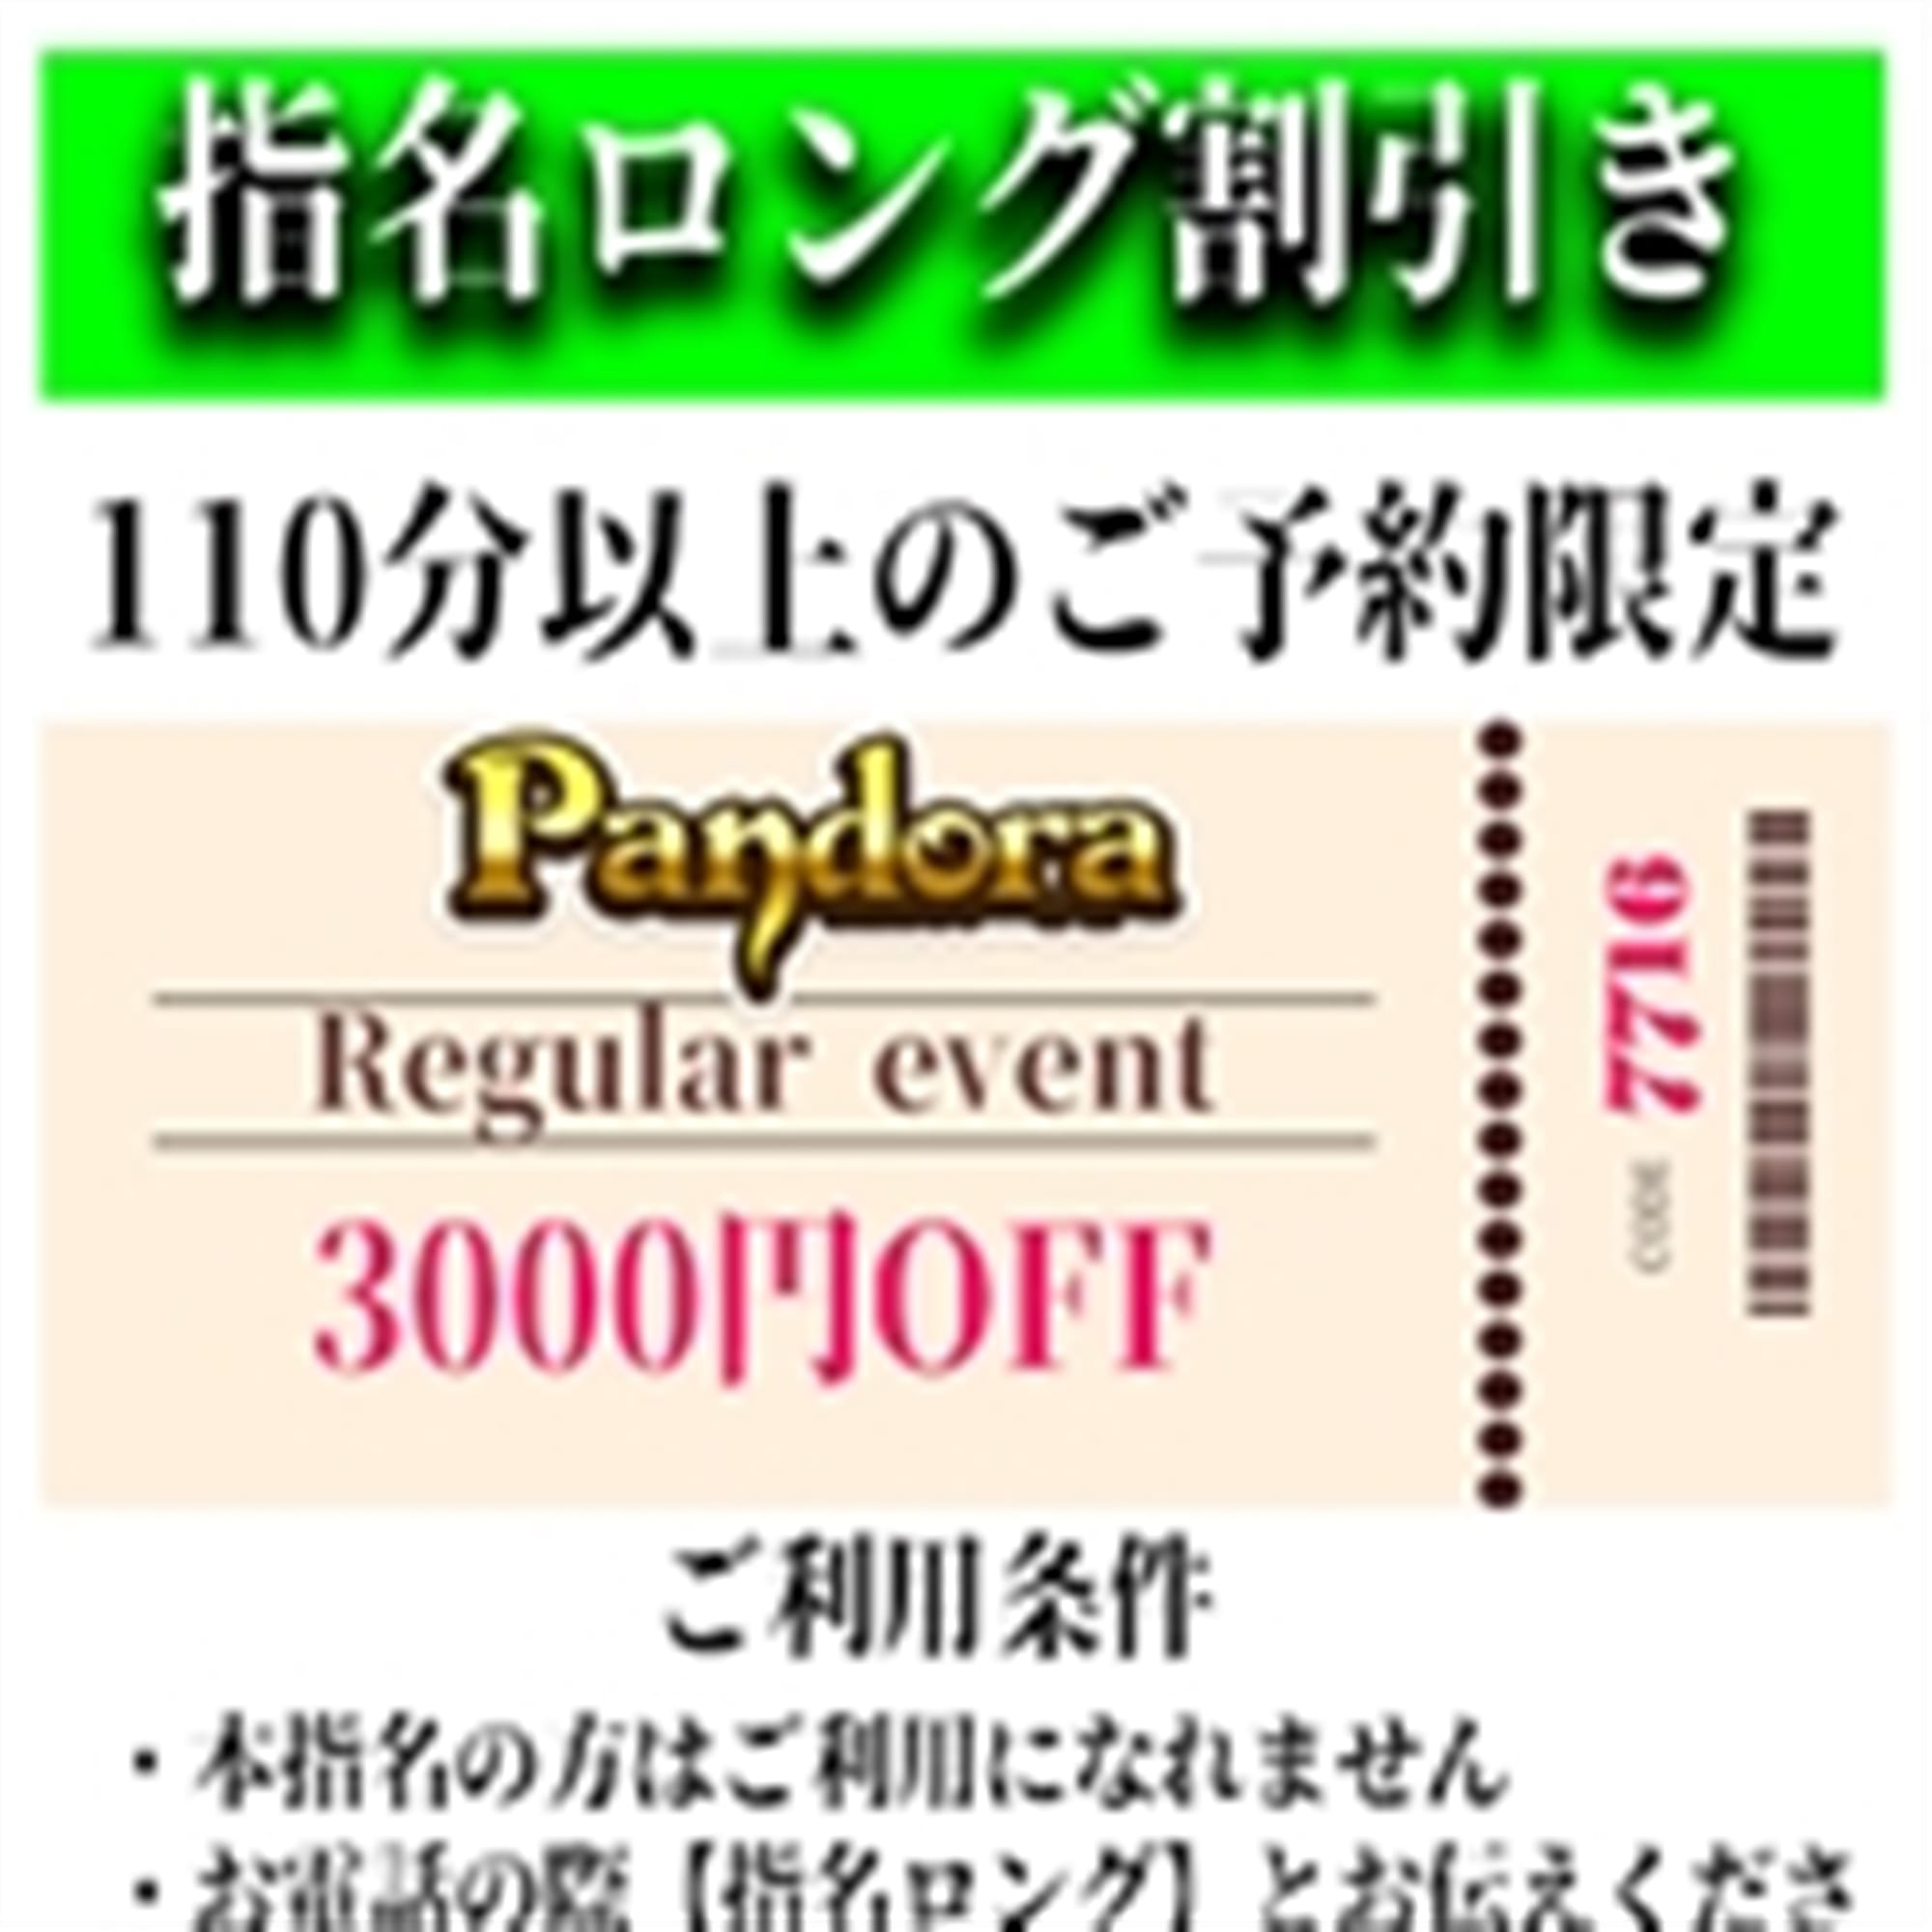 「ご指名のお客様も遊べるロングコース割引」04/25(木) 22:46 | Pandora(パンドラ)新潟のお得なニュース